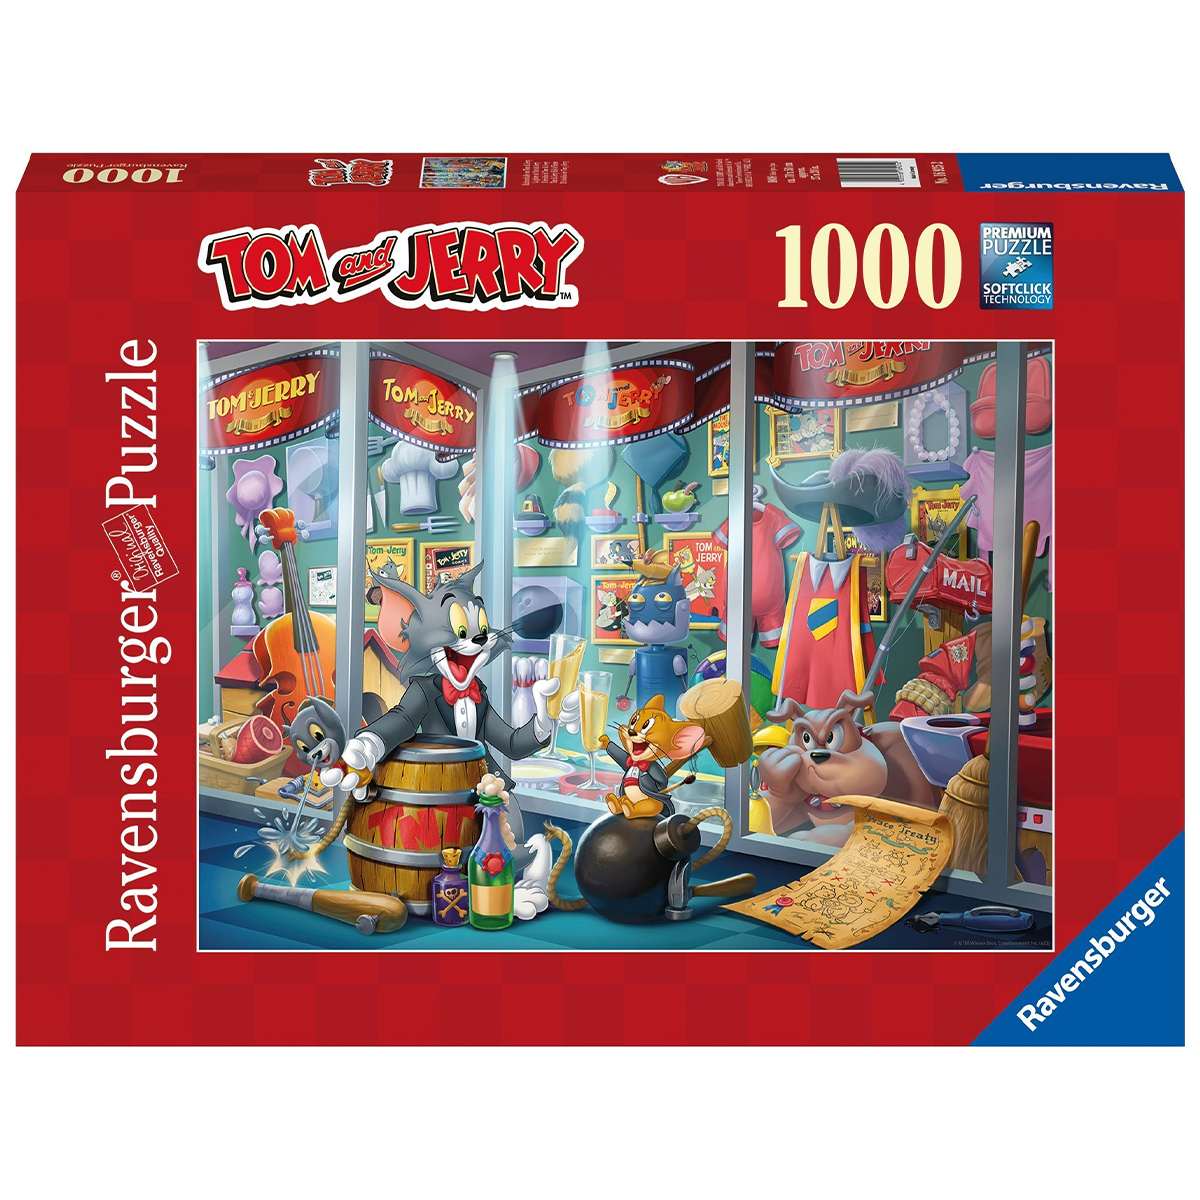 Puzzle Ravensburger Tom y Jerry de 1000 piezas